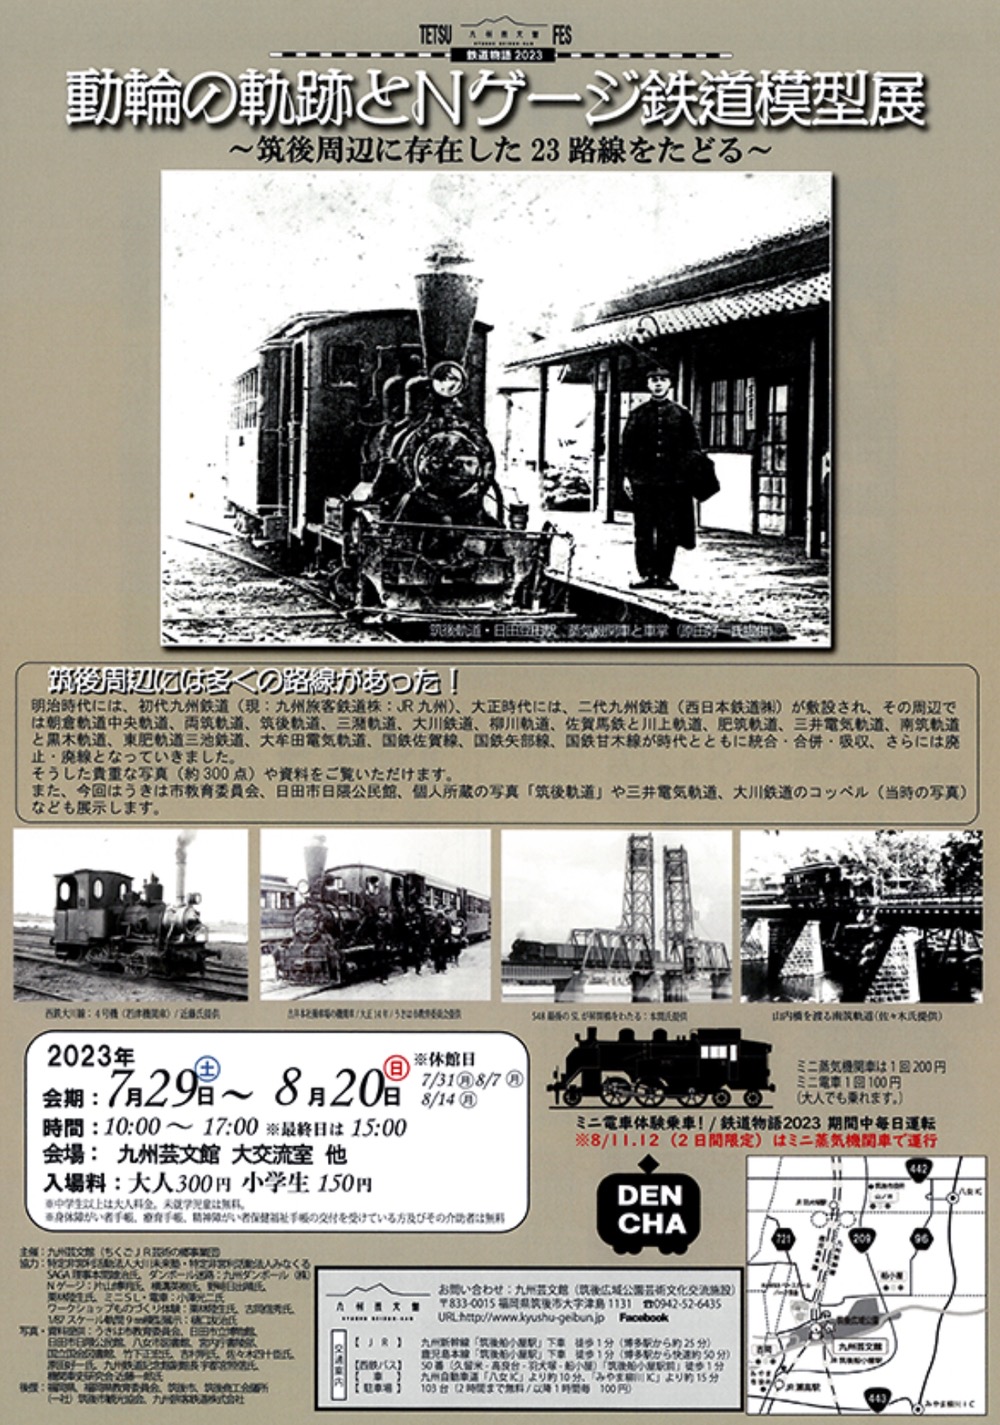 鐡道物語2023「動輪の軌跡とＮゲージ鉄道模型展」